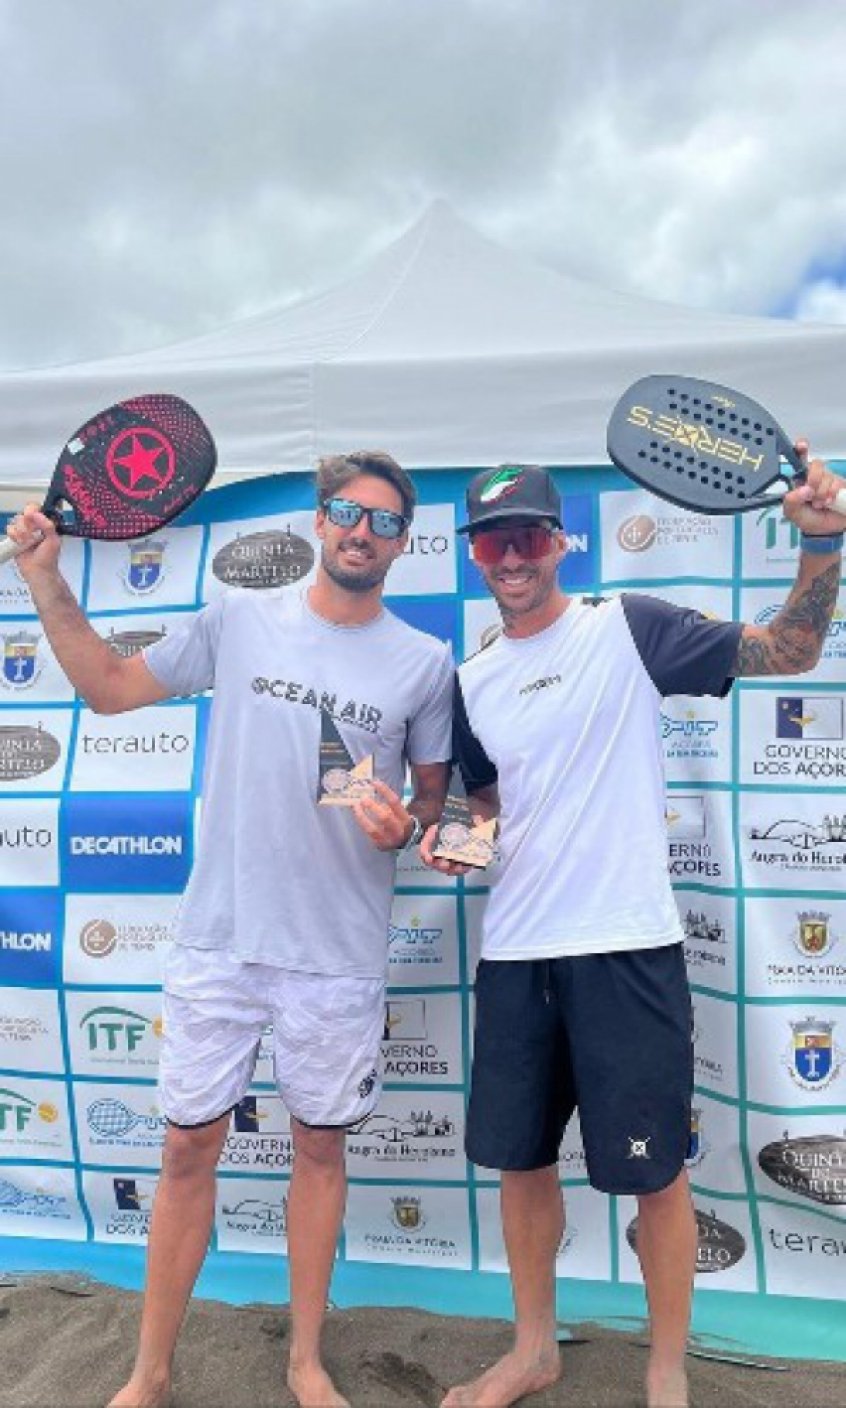 Doriano Becaccioli conquista o título do BT 200 de Praia da Vitória, em Portugal